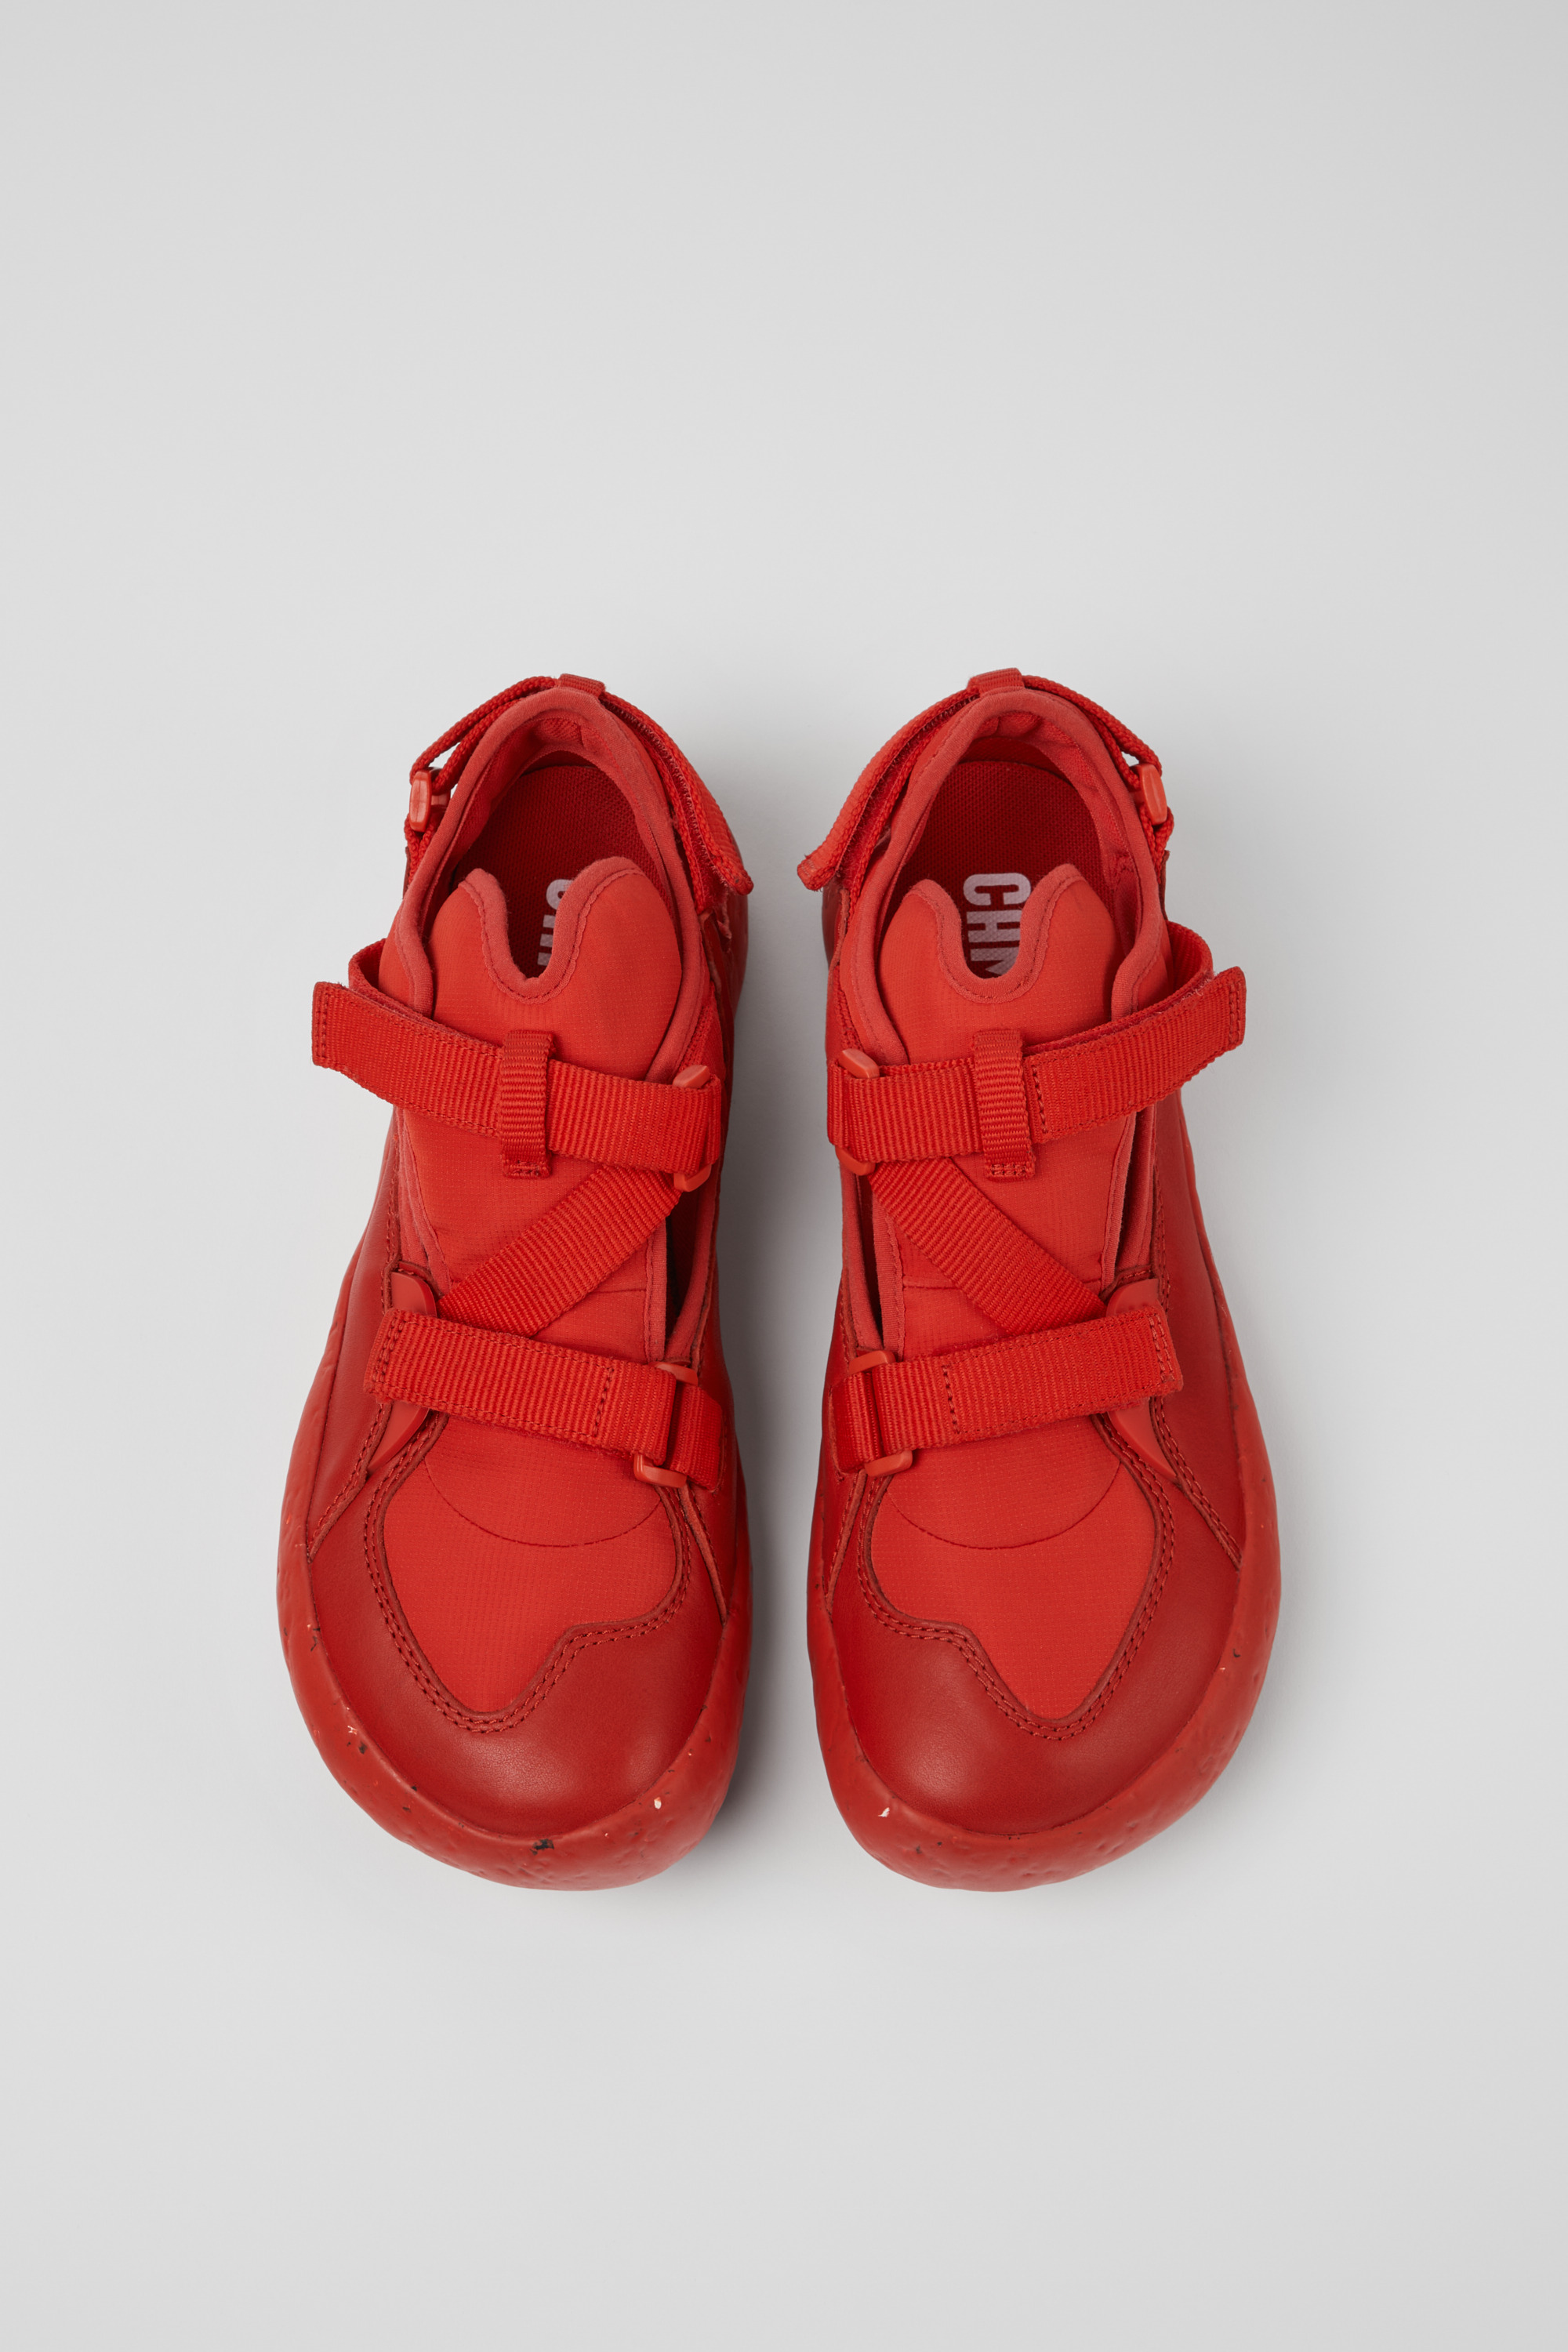 Peu Red Sandals for Men - Spring/Summer collection - Camper USA